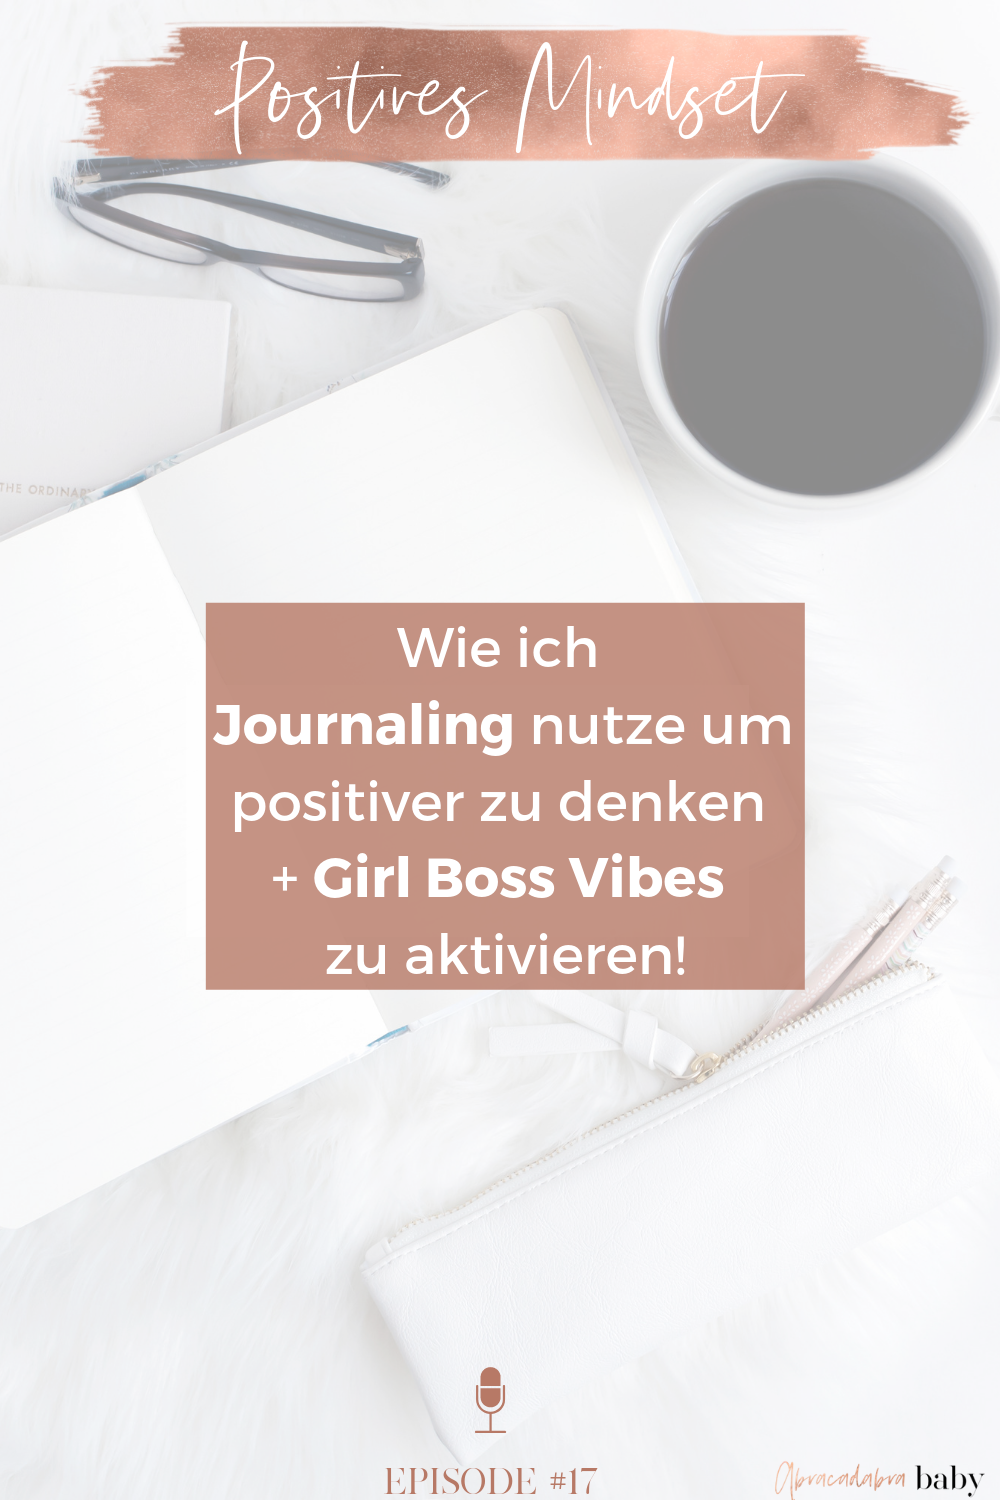 Positiver denken, Girl Boss Vibes aktivieren + Dein Mindset auf Erfolg einstimmen. Das sind meine besten Tipps für den Anfang!